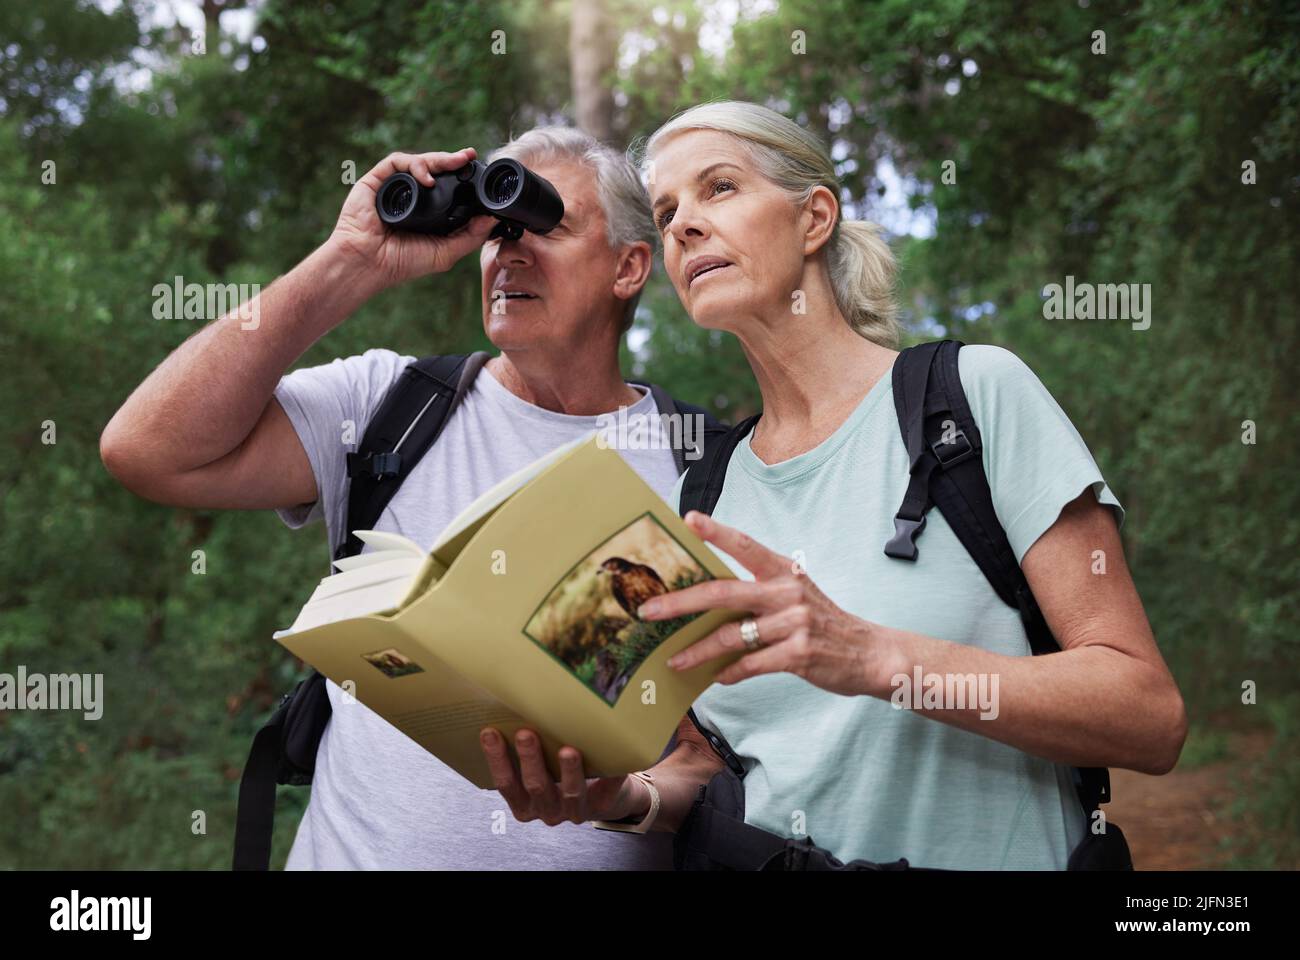 Ein älteres kaukasisches Paar benutzte Ferngläser und ein Buch, während es während einer Wanderung Vögel in einem Wald beobachtete. Reifer Ehemann und Ehefrau erkunden in einem Wald Stockfoto